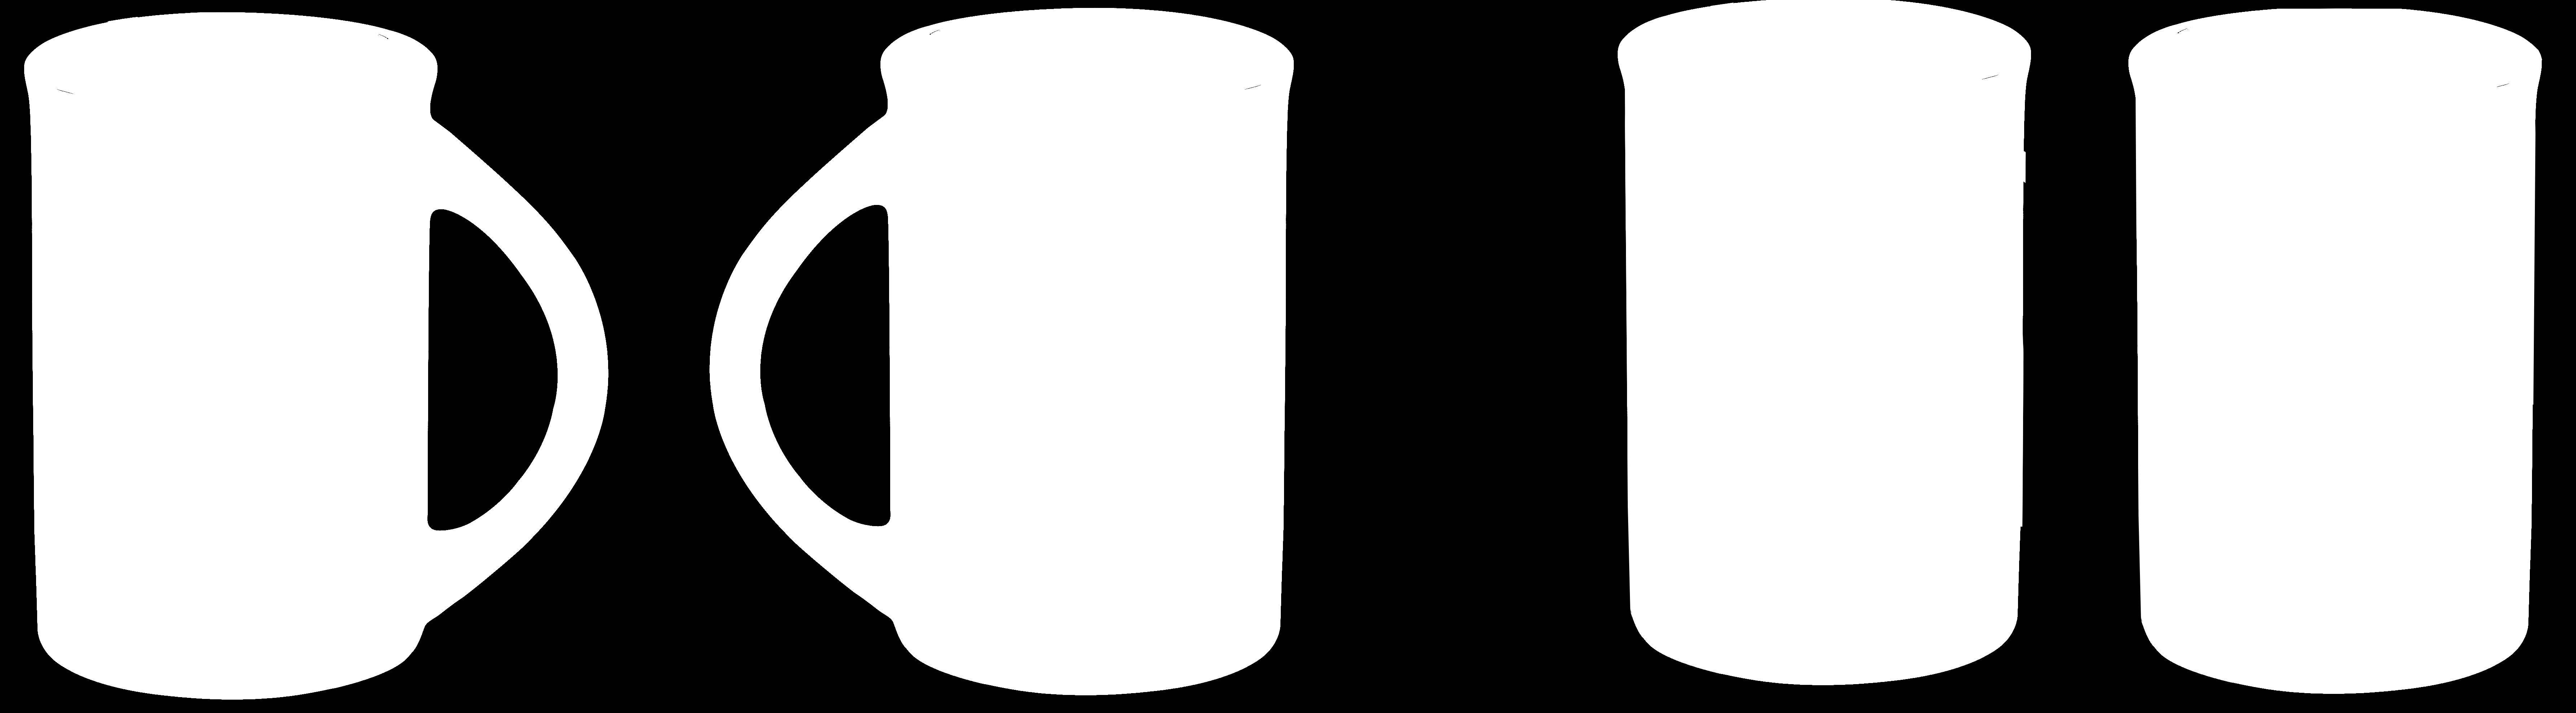 białym, na zewnątrz 2 duże sygnet ekolublin (2 kolory: Pantone 369C, Pantone 485C), jeden z sygnety